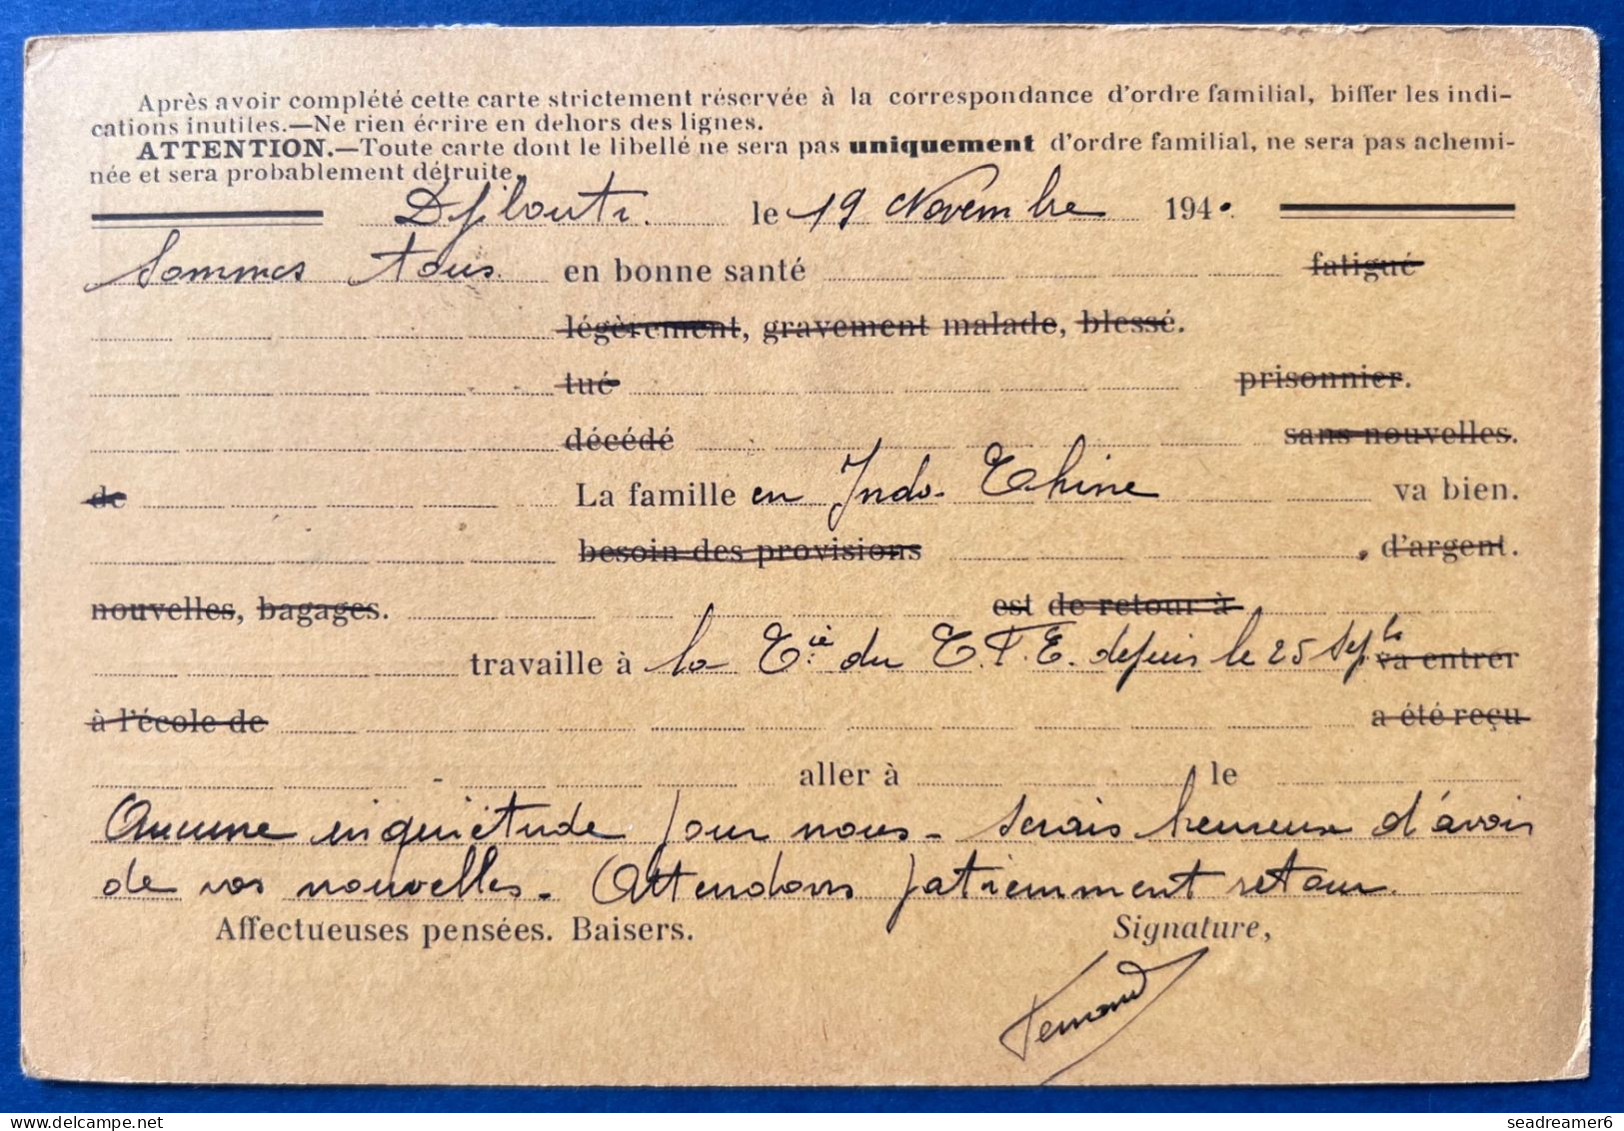 Carte Postale Formulaire Interzone à Usage D'un Civil Affranchie Djibouti N°98 & 187 X2 Du 20 NOV 1940 Blocus ANGLAIS R - Brieven En Documenten